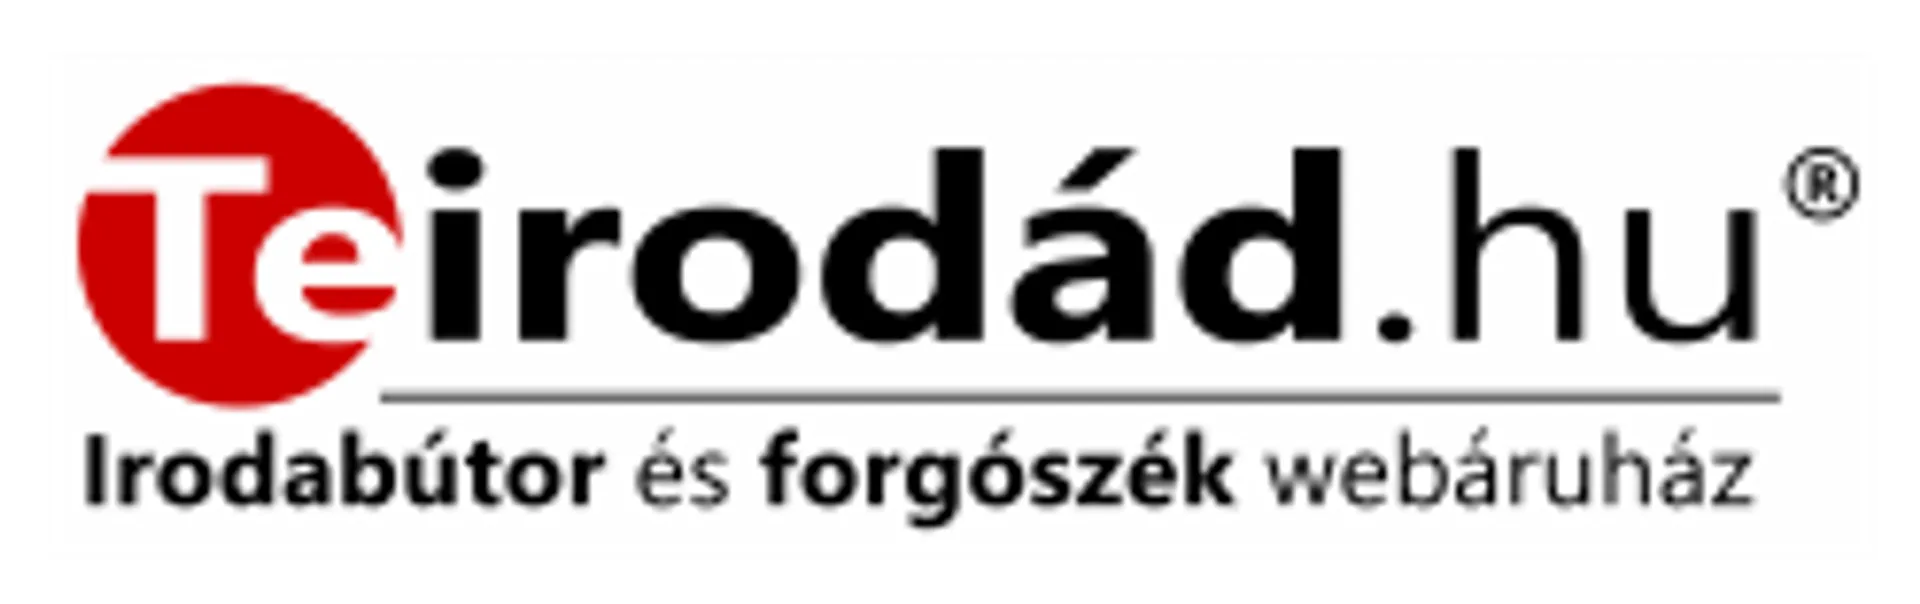 TEIRODÁD logo